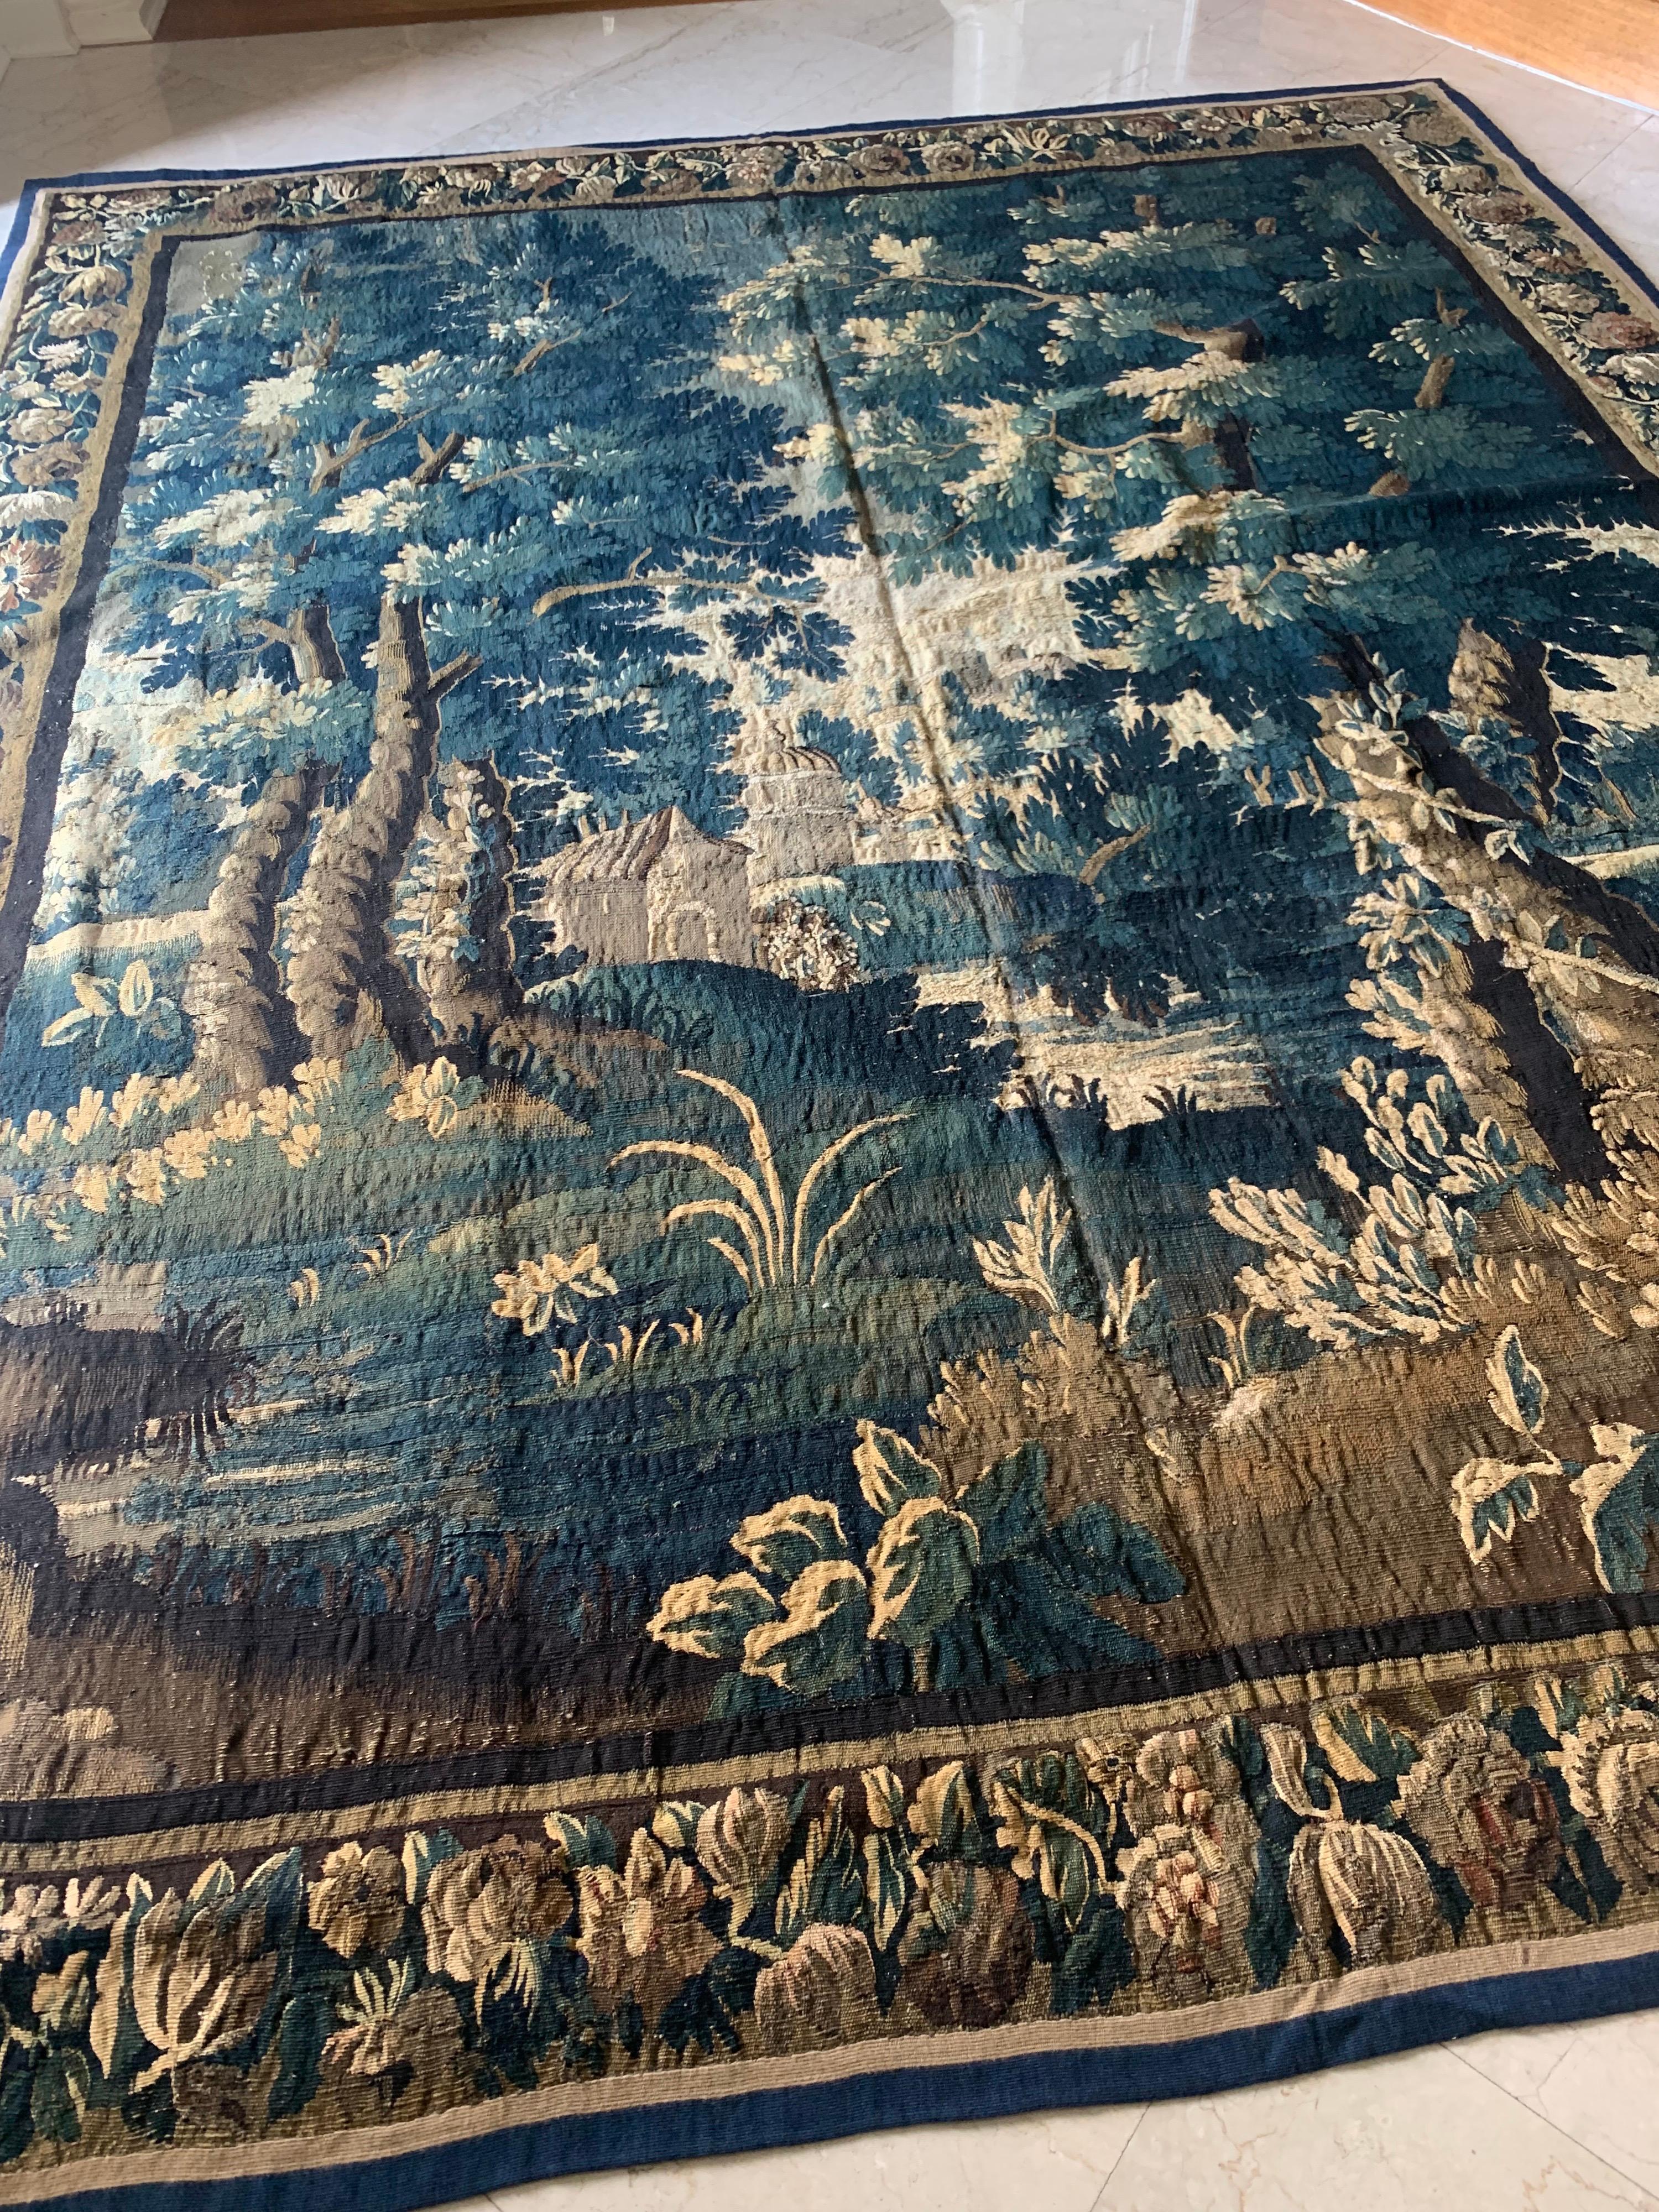 Il s'agit d'une magnifique tapisserie ancienne carrée de Verdure flamande du 17ème siècle sans personnages dans une belle et riche scène estivale d'une campagne avec des arbres et une végétation luxuriante et des maisons au loin. La bordure présente